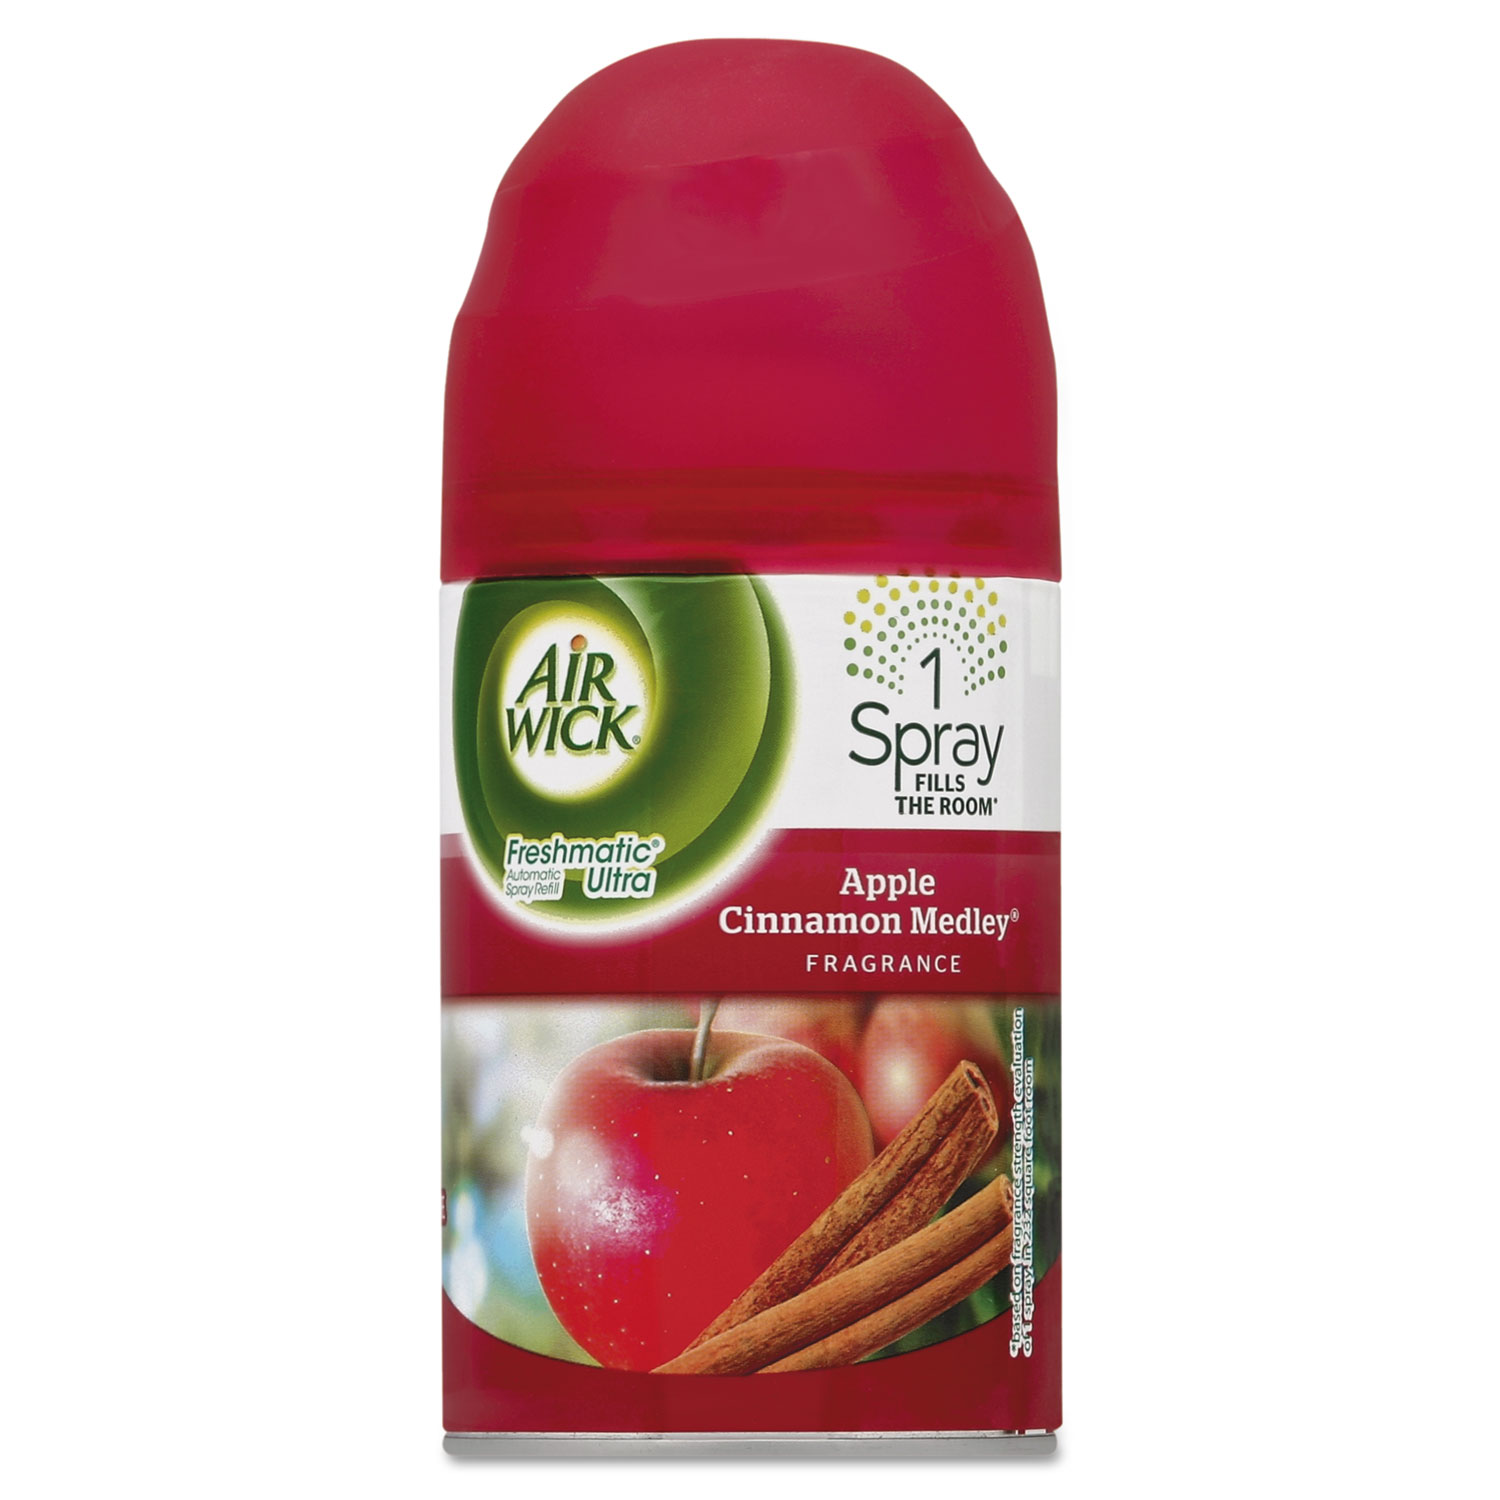 Freshmatic Ultra Spray Refill, Apple Cinnamon Medley, Aerosol, 6.17 oz, 6/CT